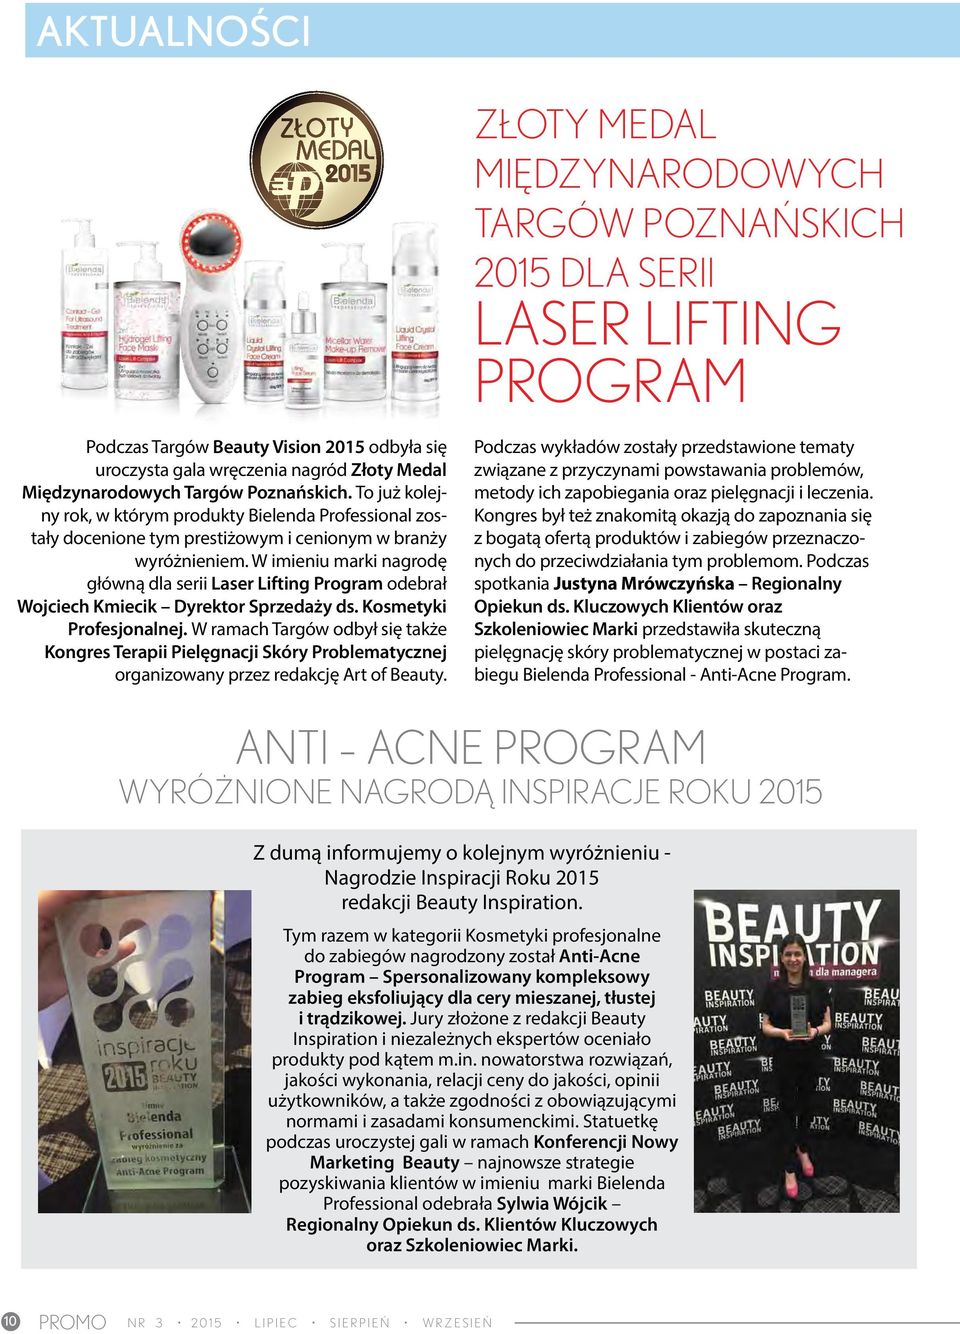 W imieniu marki nagrodę główną dla serii Laser Lifting Program odebrał Wojciech Kmiecik Dyrektor Sprzedaży ds. Kosmetyki Profesjonalnej.